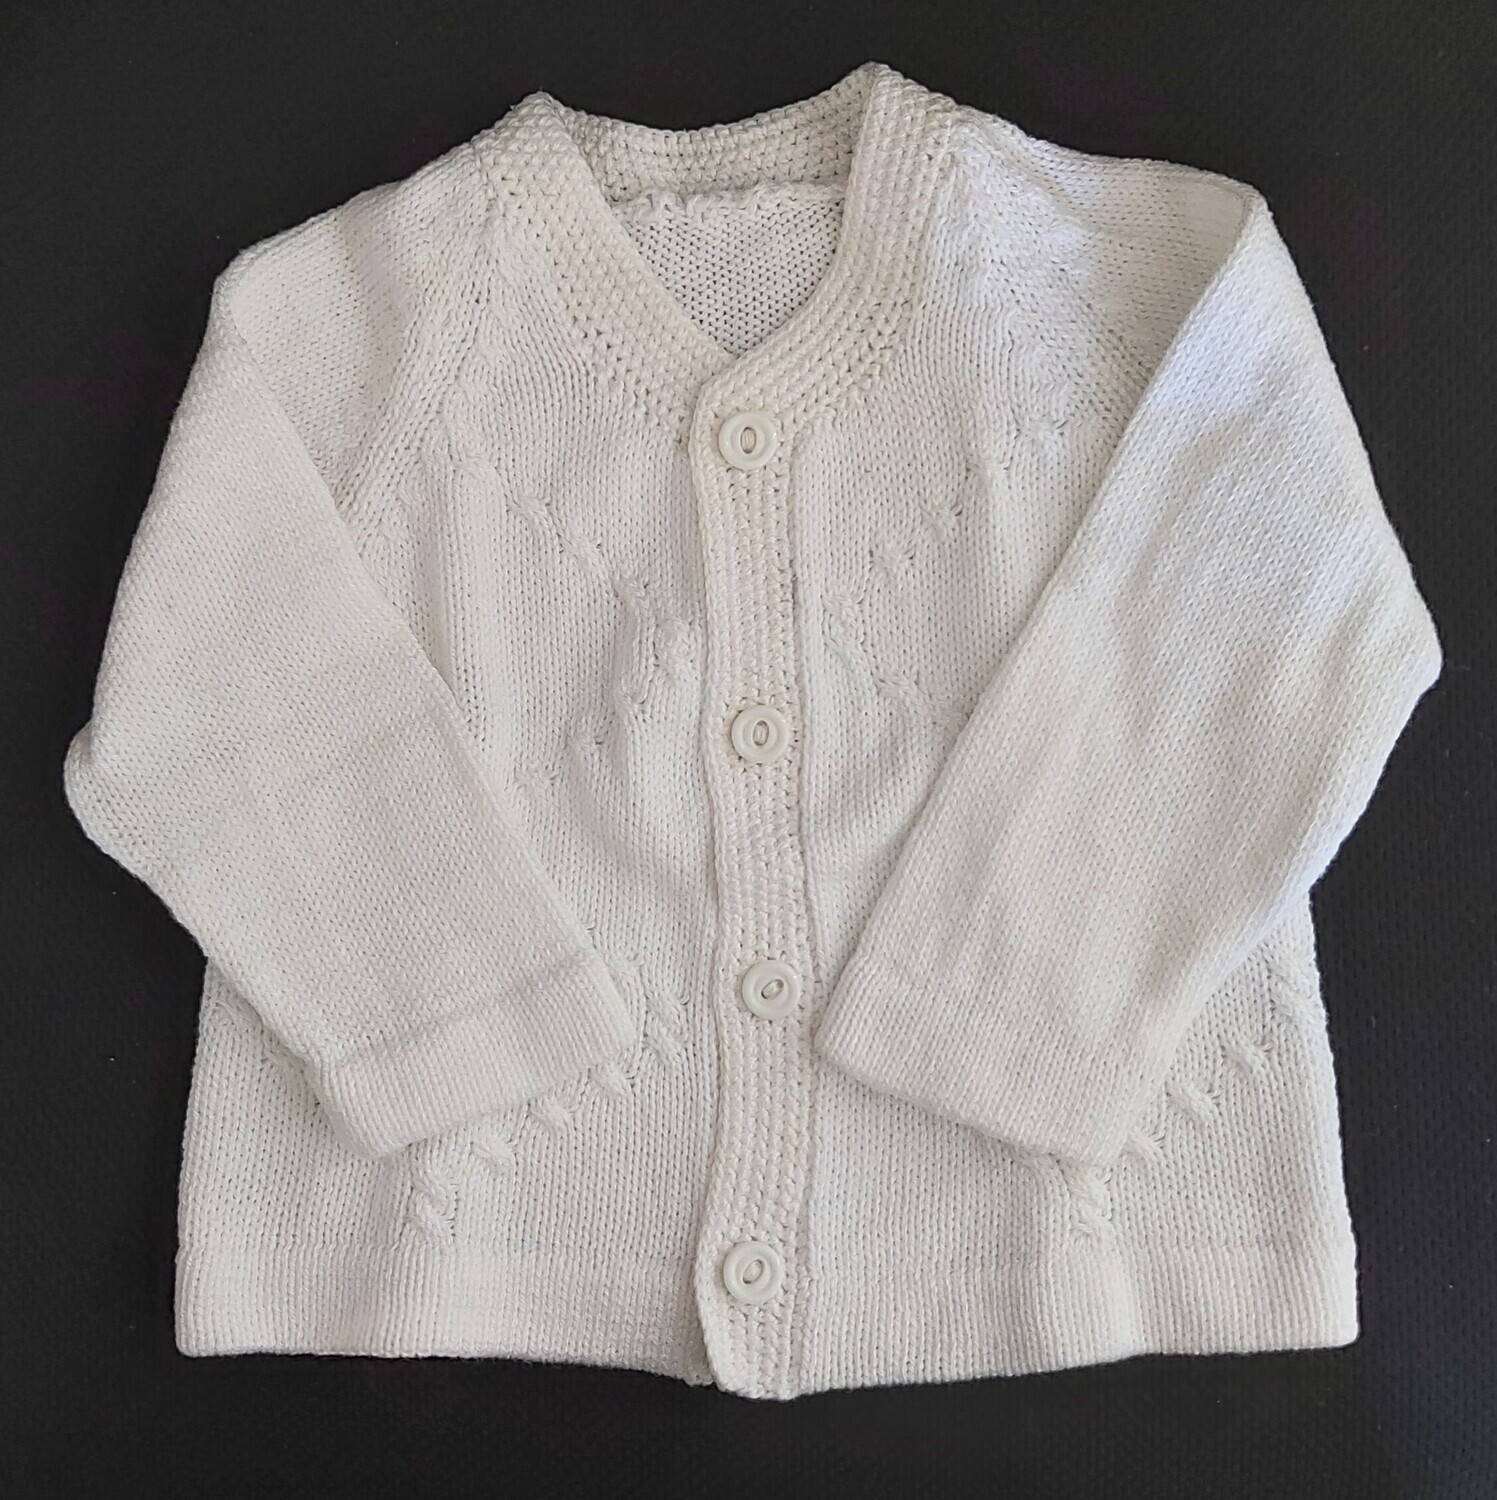 White cotton jacket, size 1yr